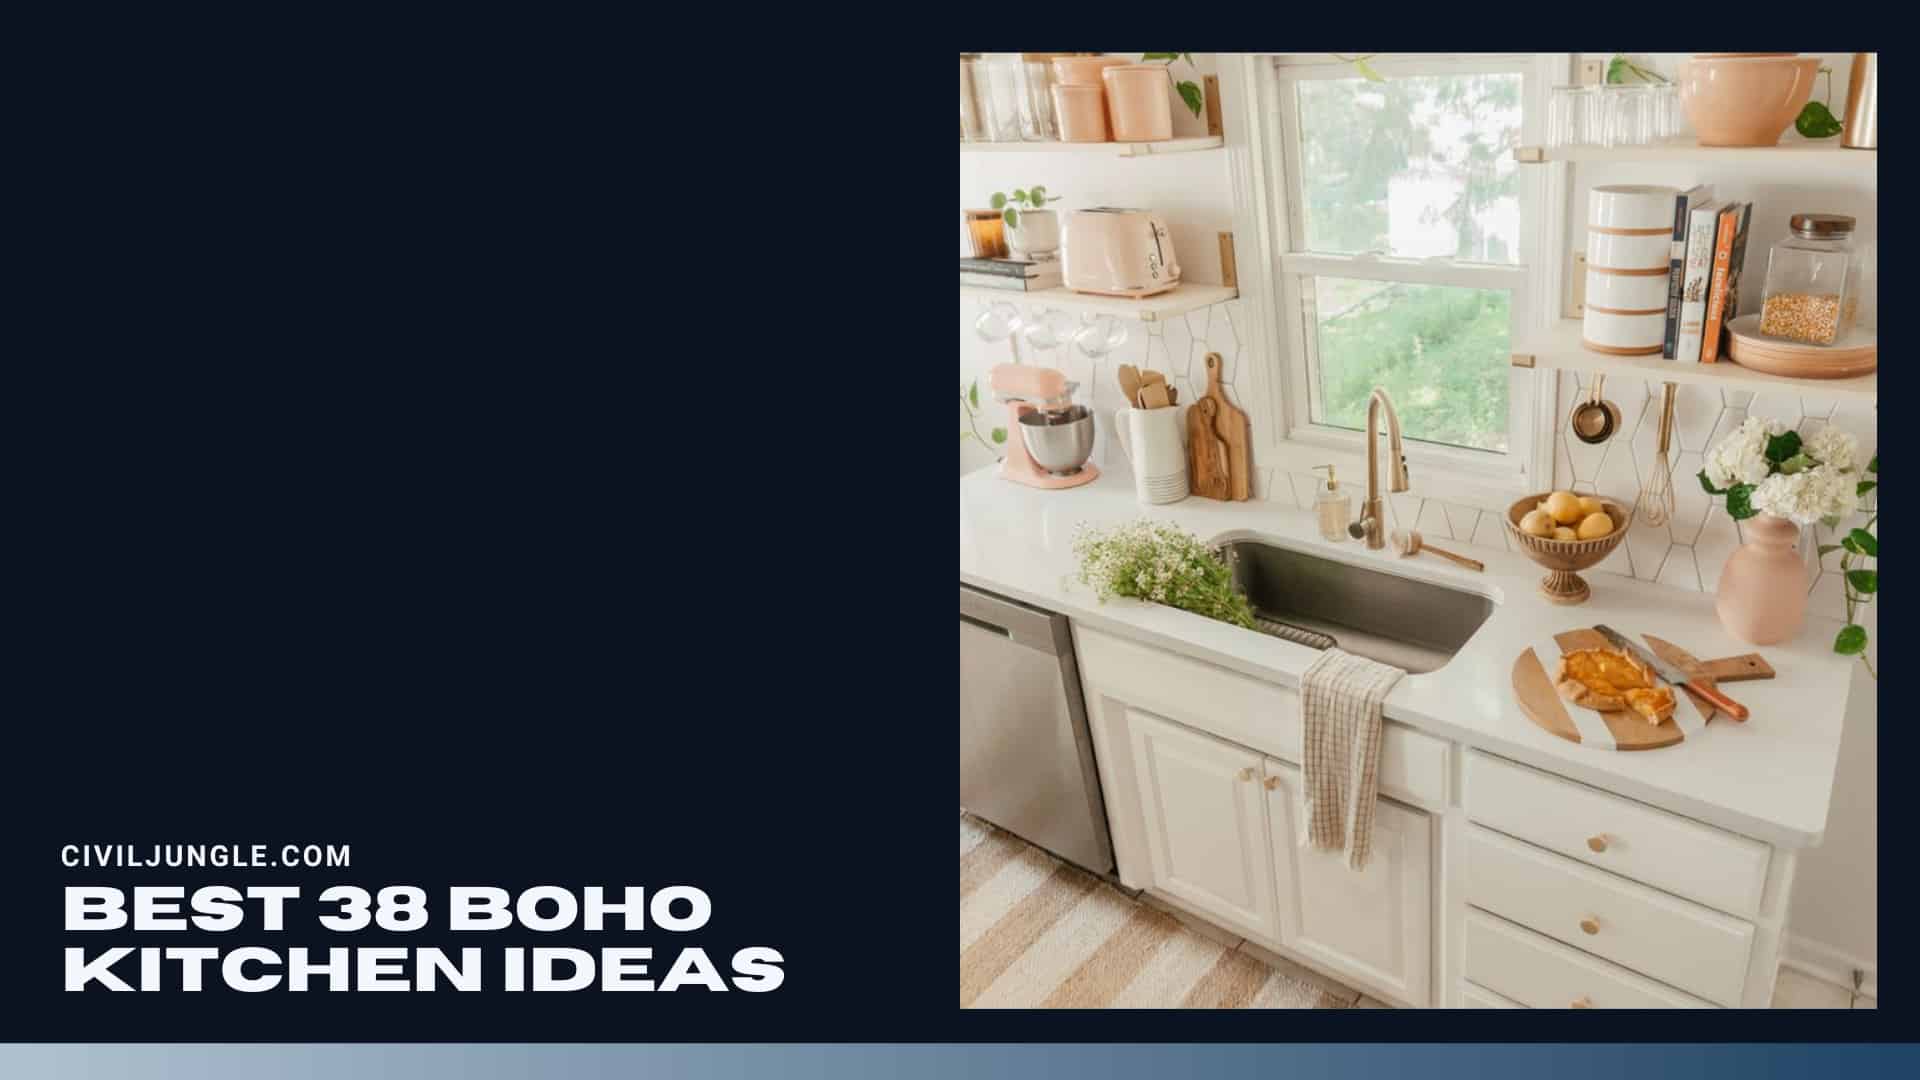 Best 38 Boho Kitchen Ideas